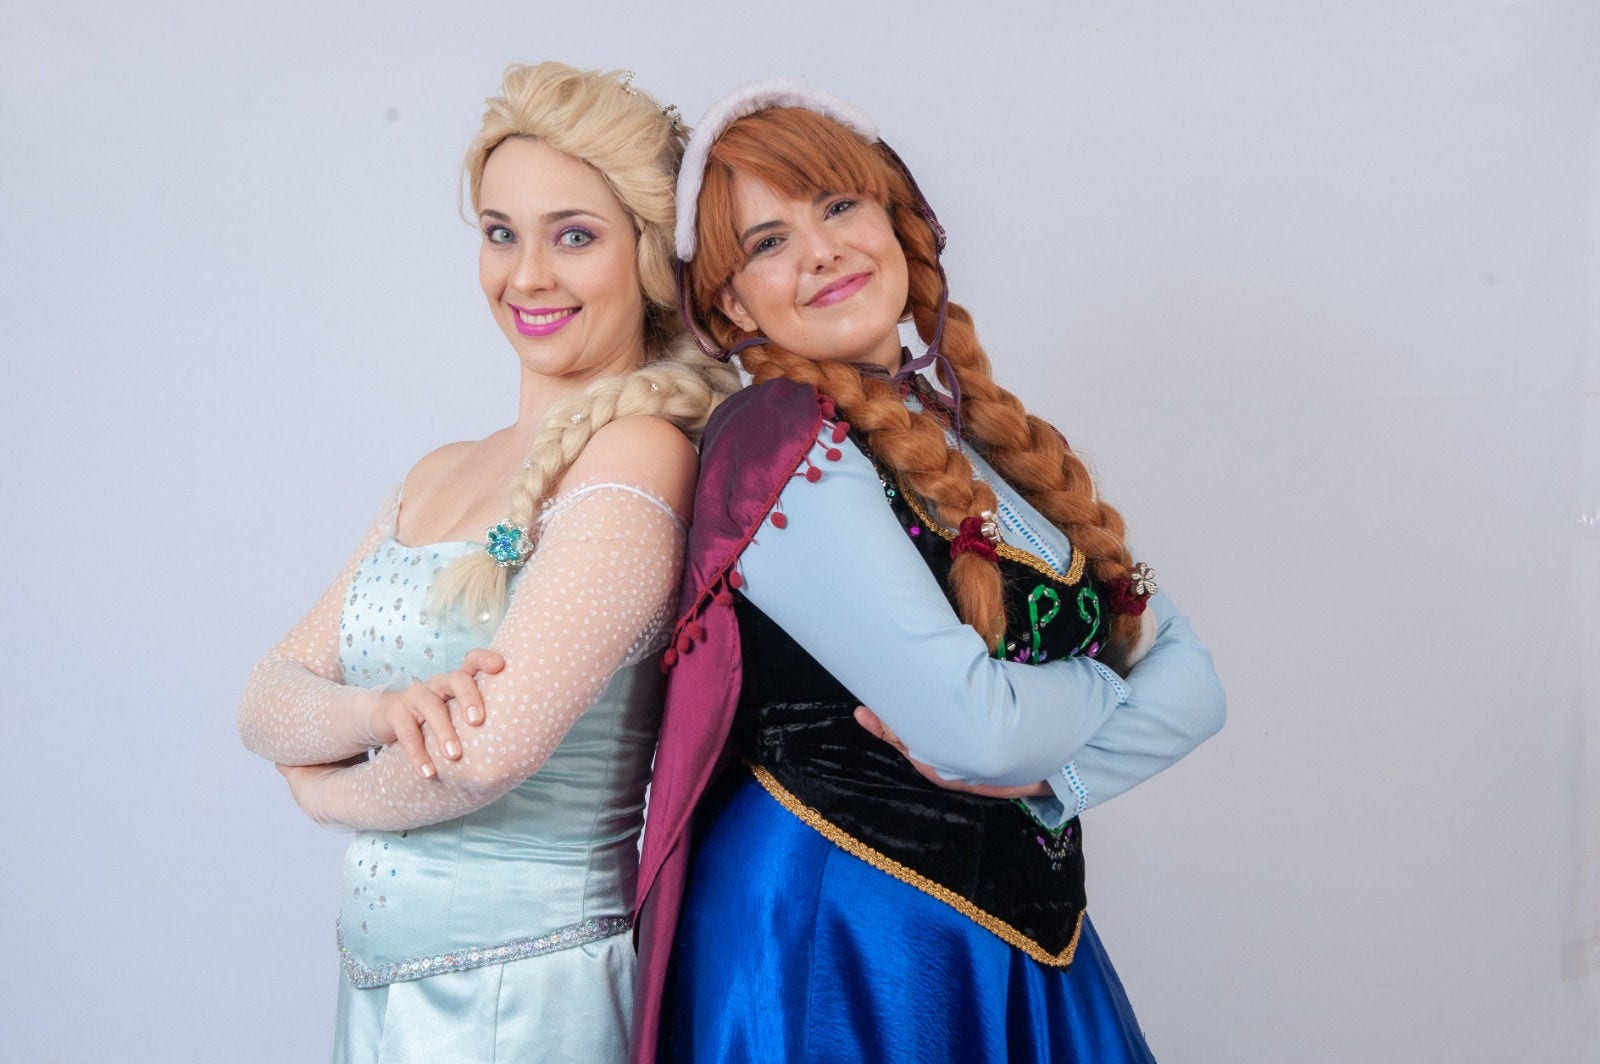 Evento reunirá algumas das principais princesas da Disney